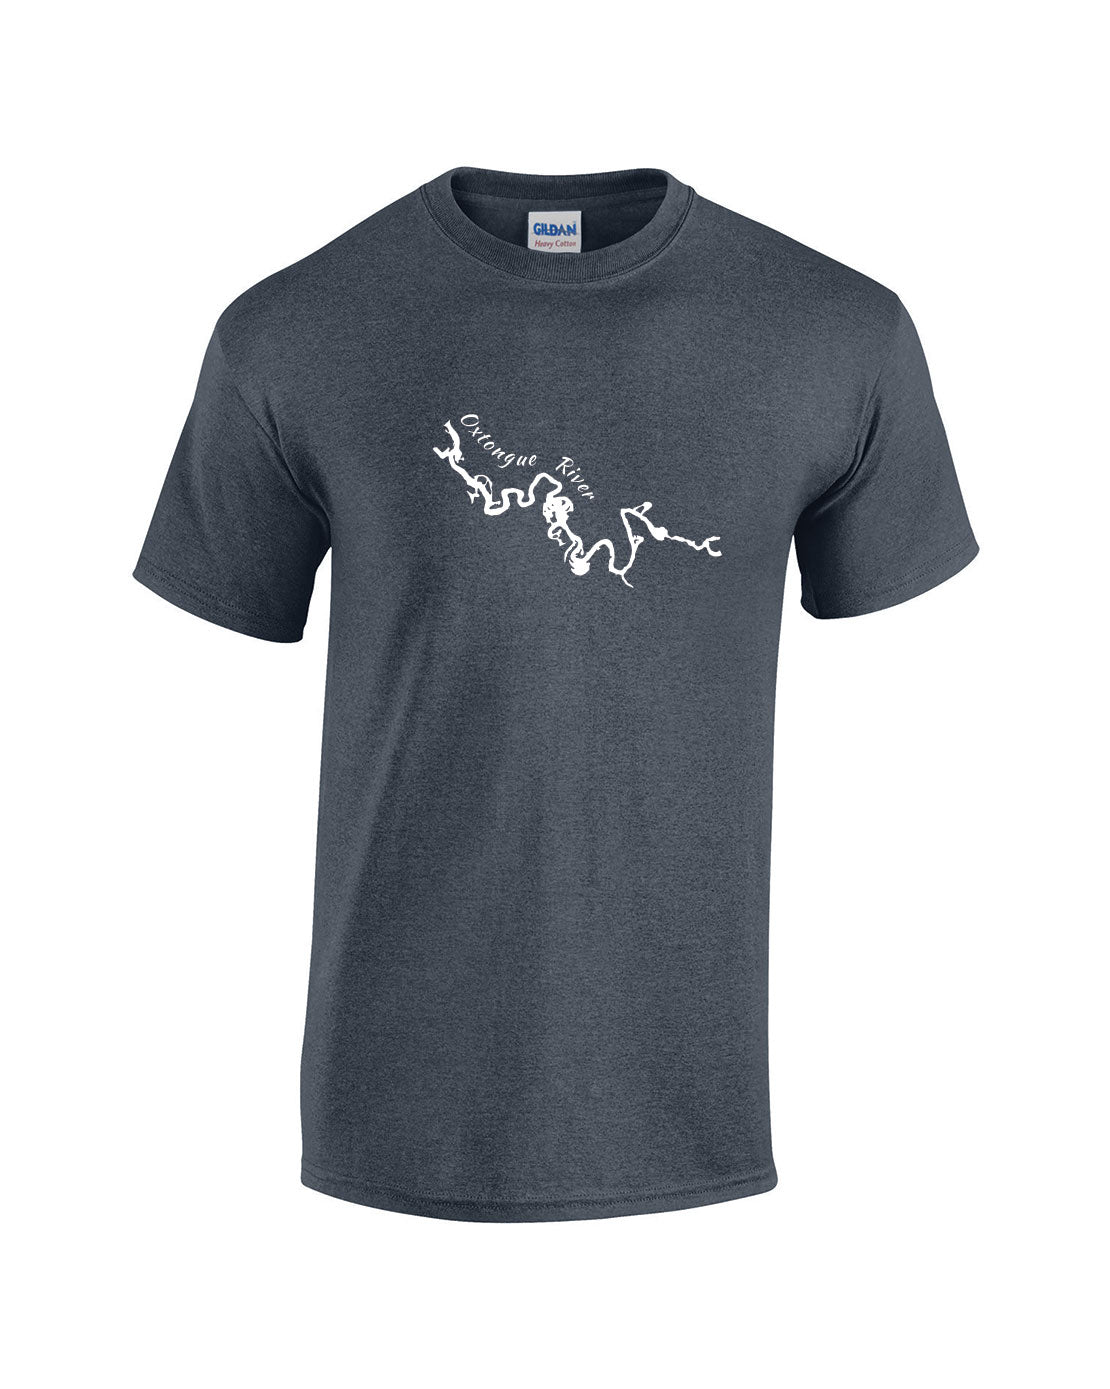 Oxtongue River T-Shirt